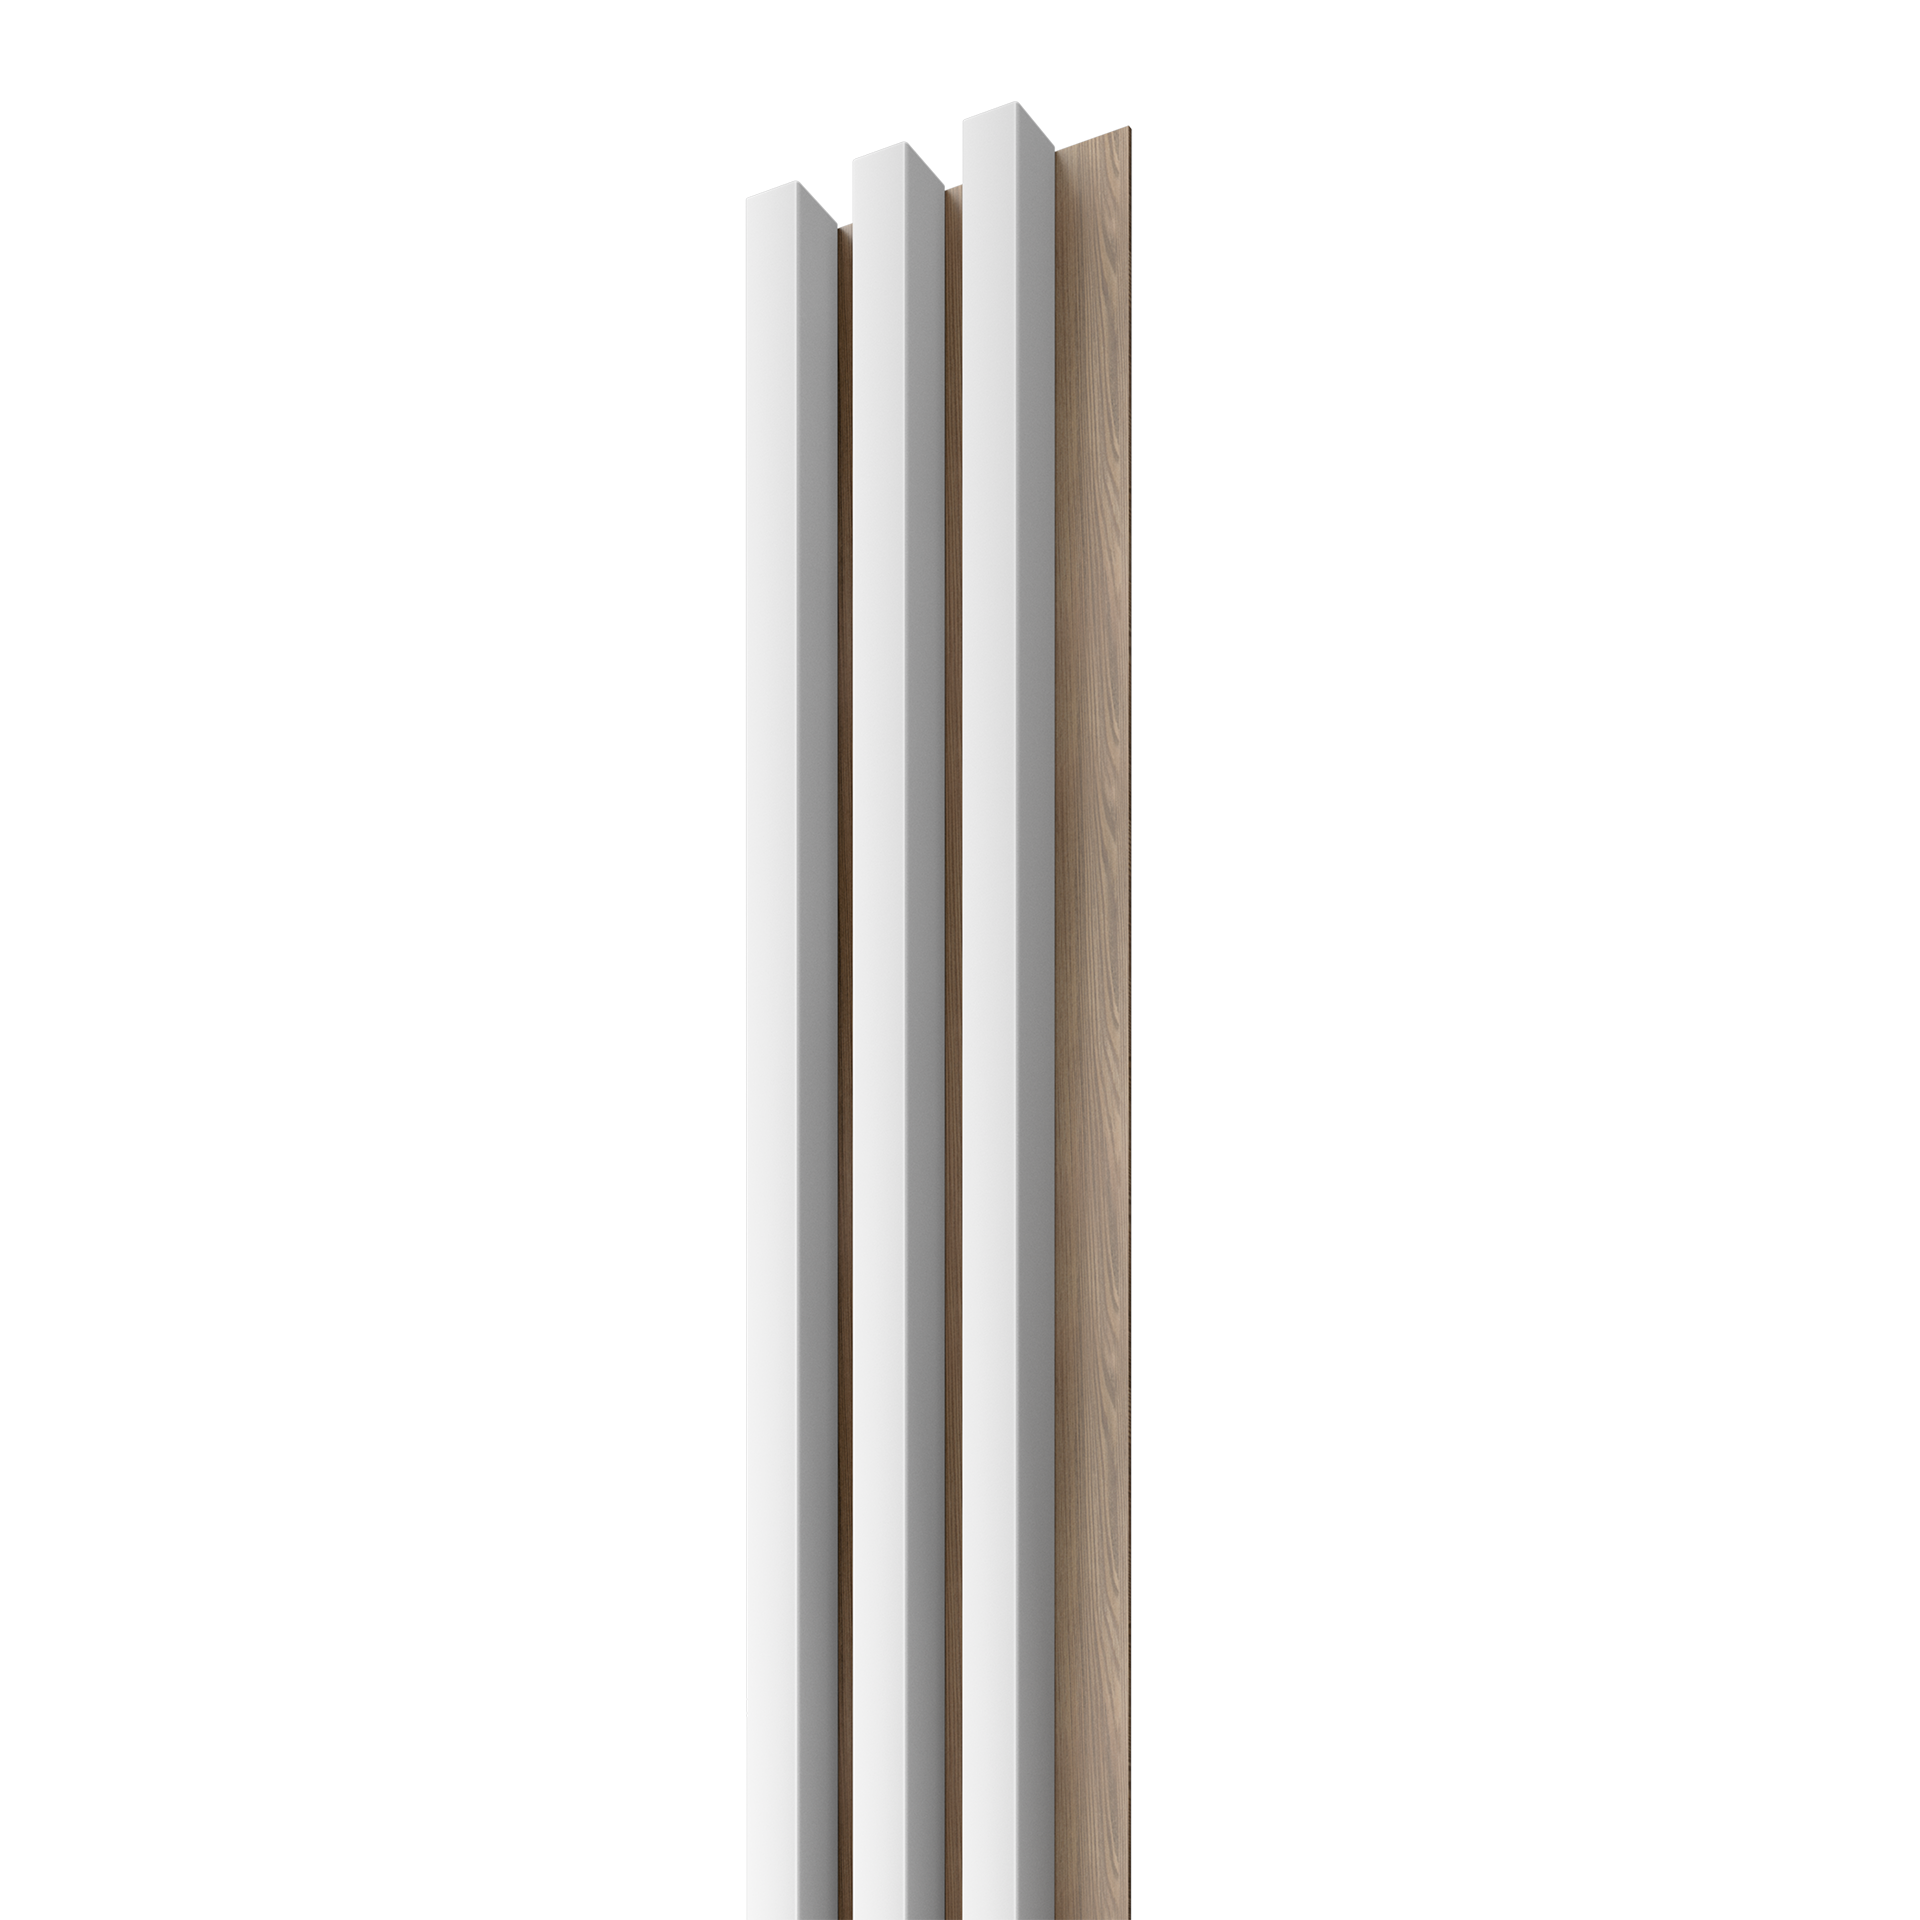 Dřevěná lamela LINEA 3 - bílá / dub 2750 x 176 x 40 mm cena za balení